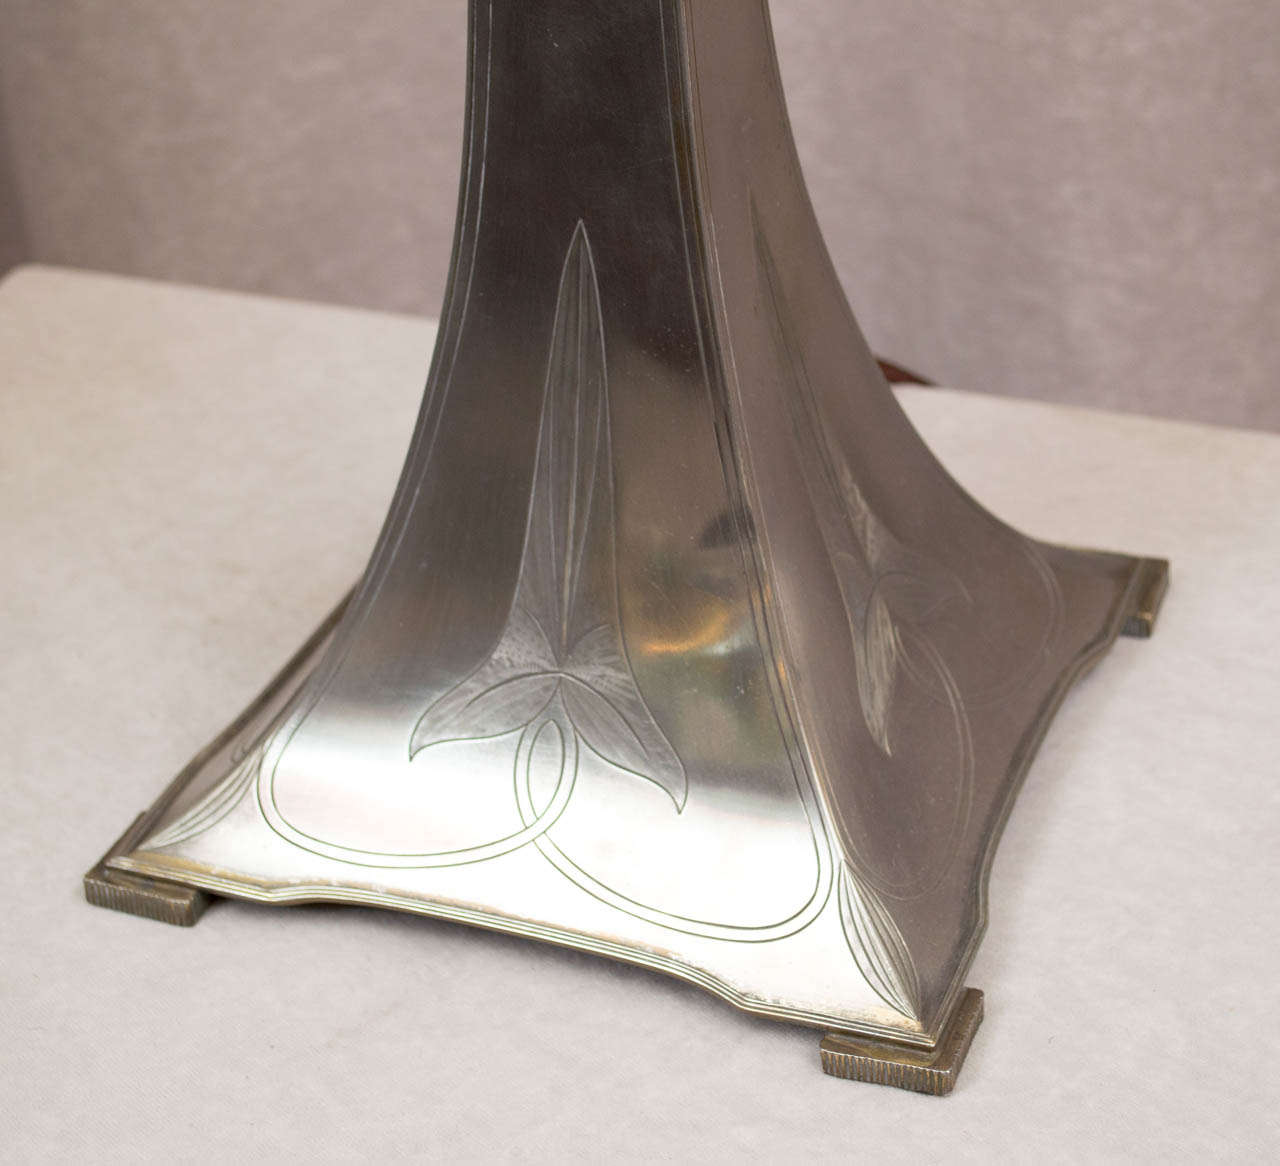 20th Century Art Nouveau Table Lamp, Austrian Glass